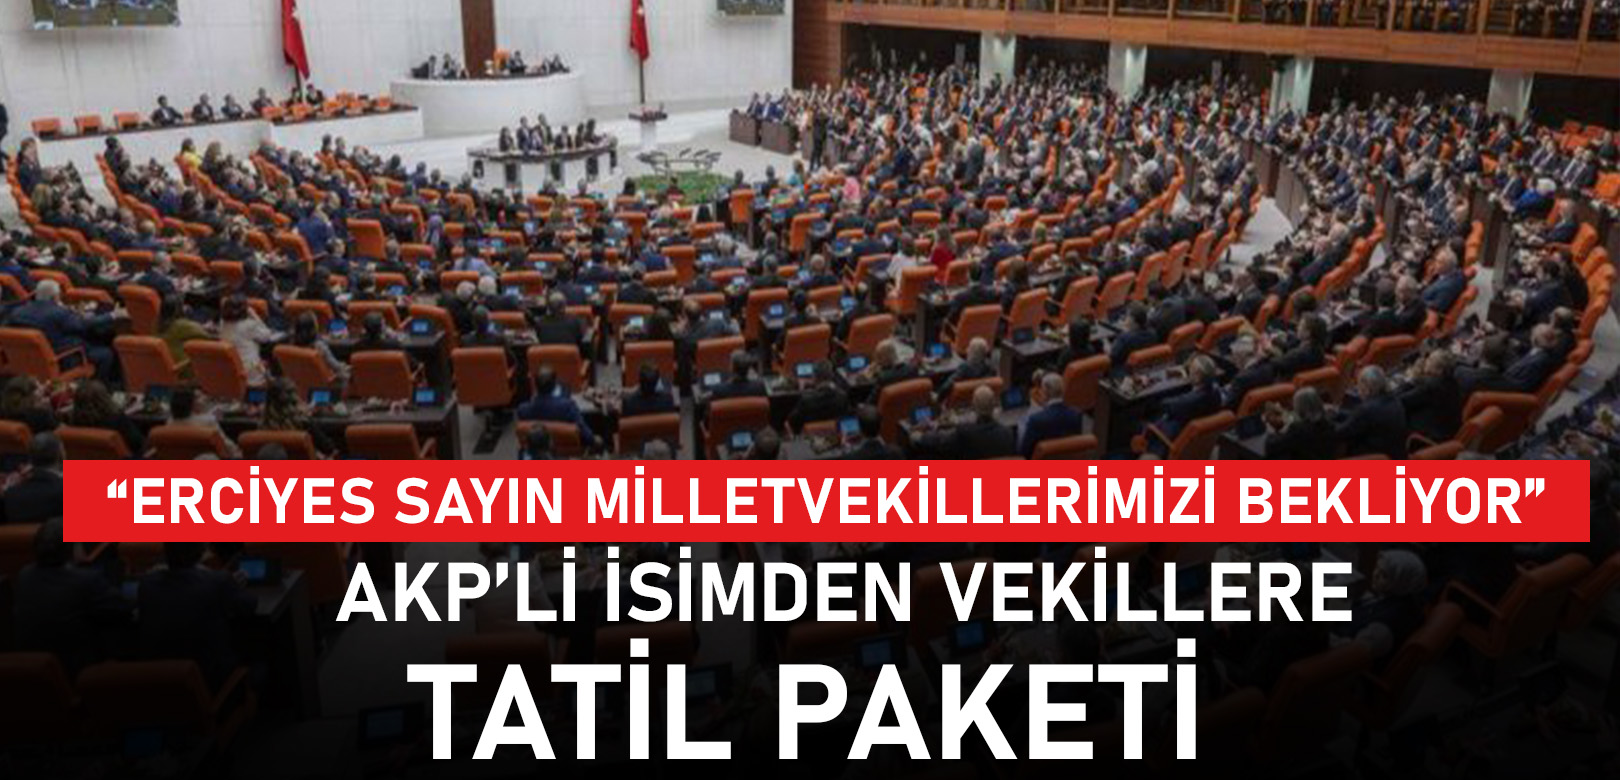 AKP’li isimden vekillere “indirimli” tatil paketi: “Erciyes Sayın Milletvekillerimizi bekliyor”